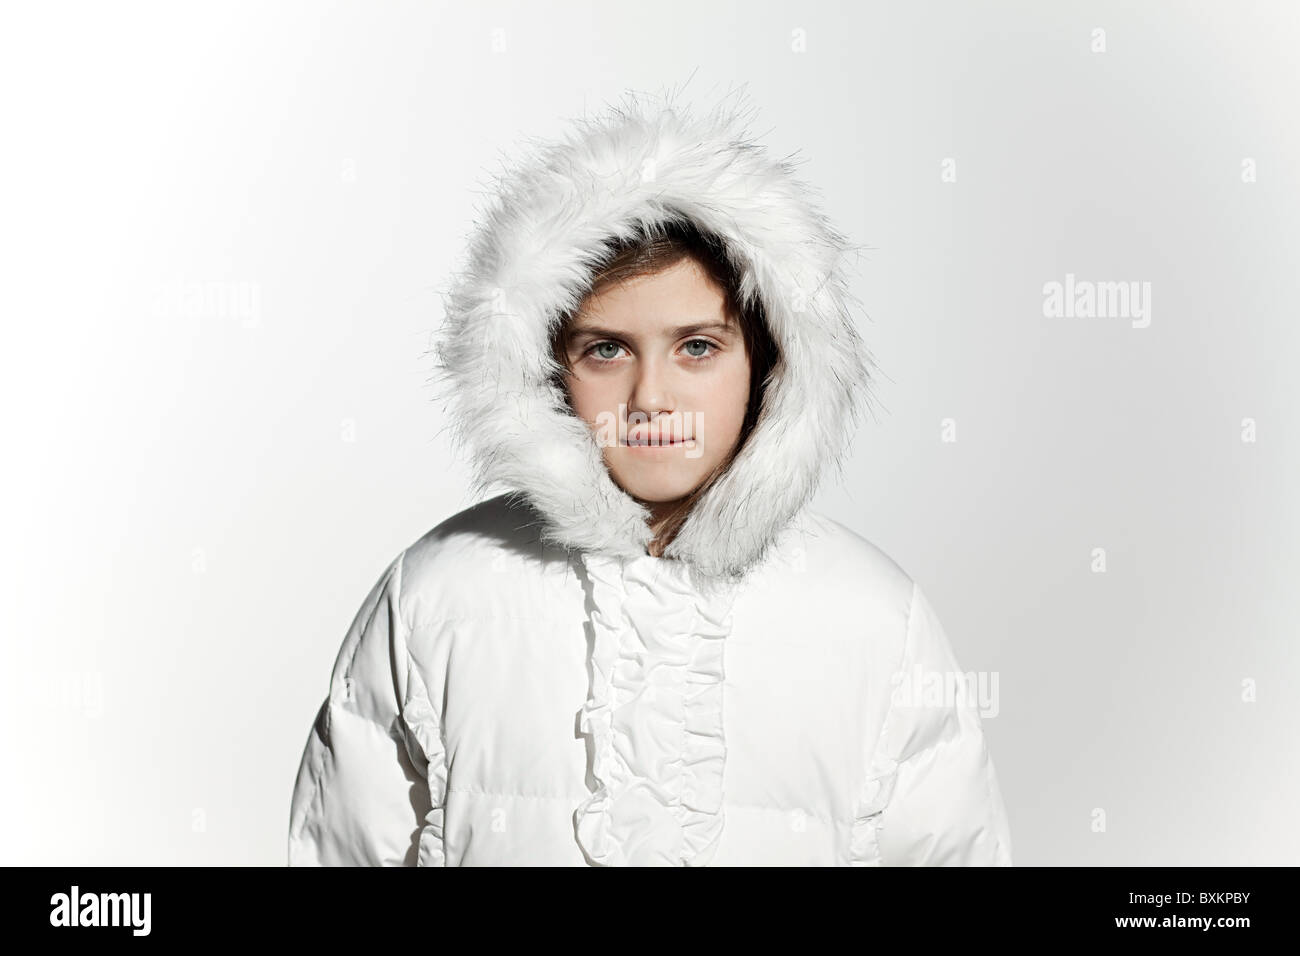 Jeune fille portant un manteau de fourrure blanche avec capot Photo Stock -  Alamy